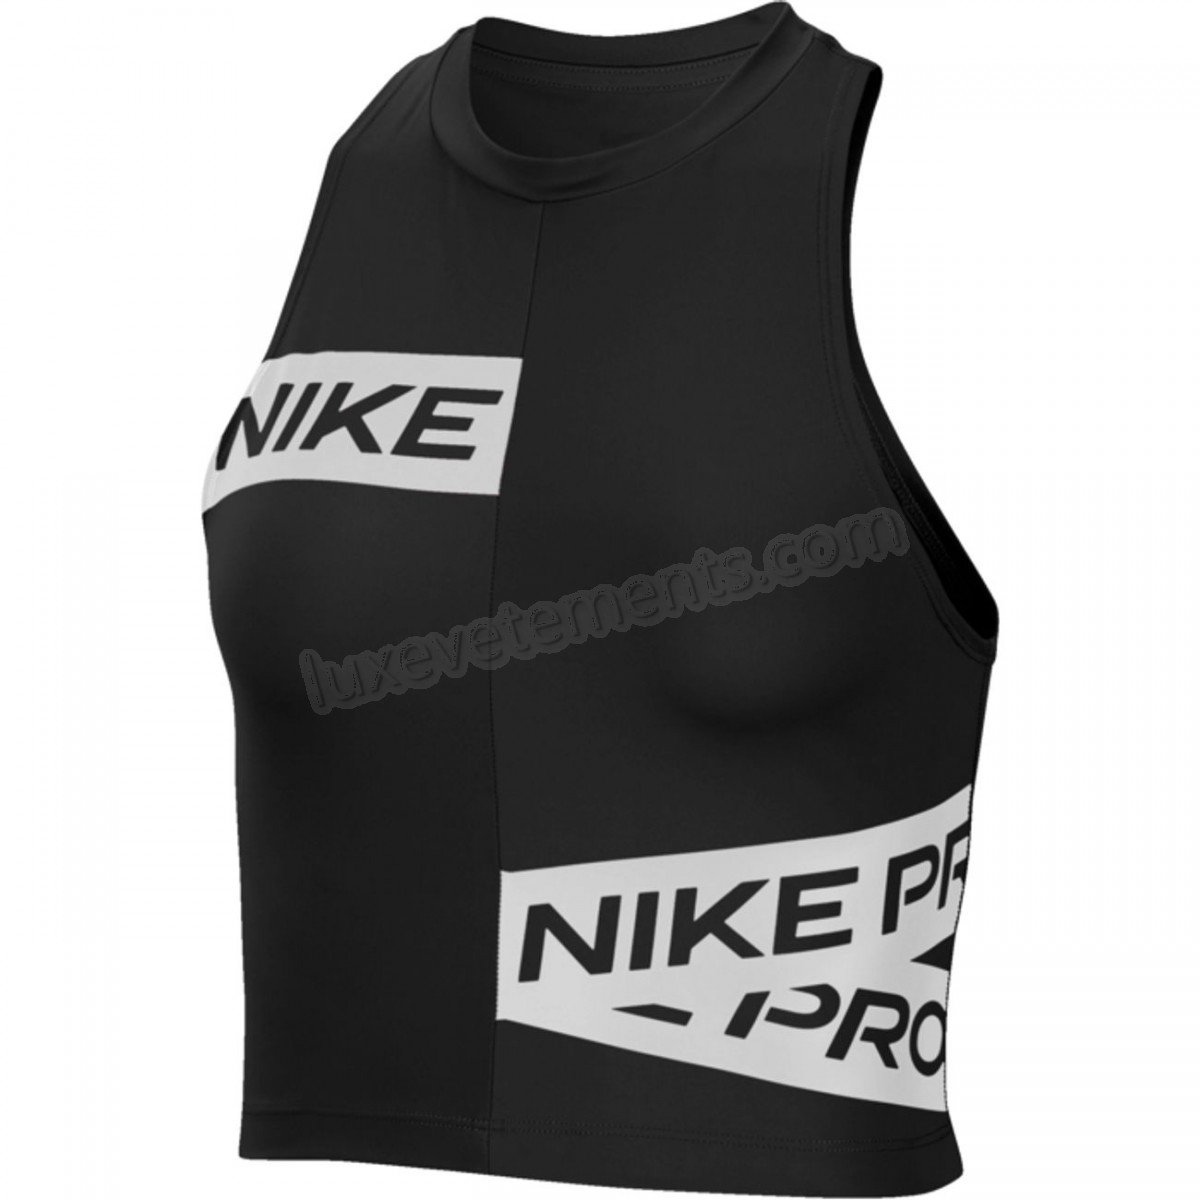 Nike-Crop Top femme NIKE Nike Pro Vente en ligne - -0